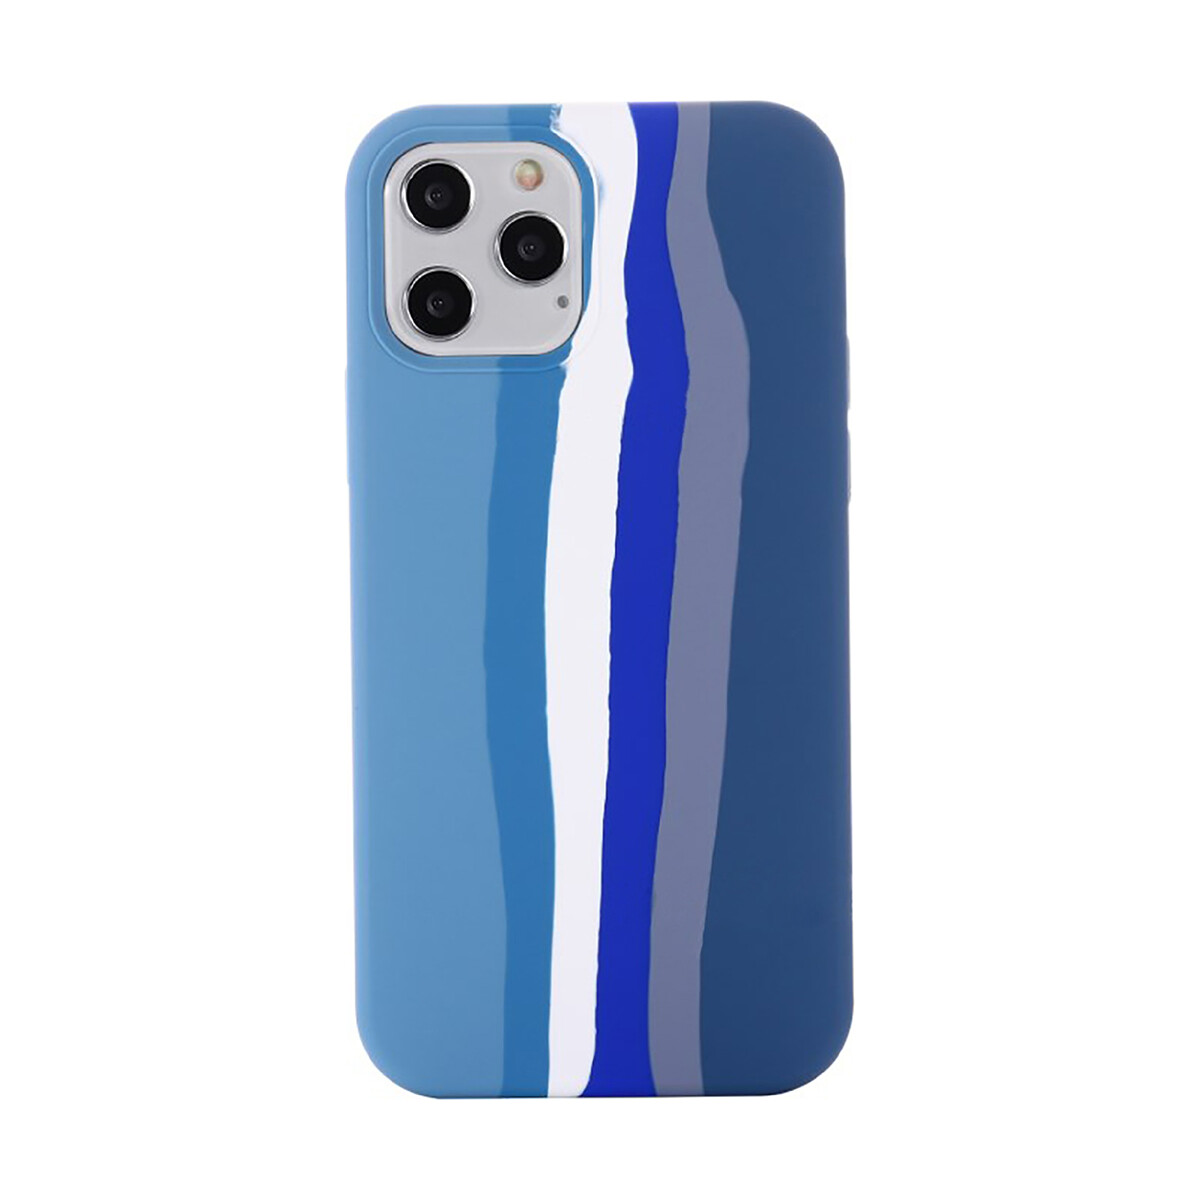 Protector funda de silicona para iphone 12 / iphone 12 pro Azul